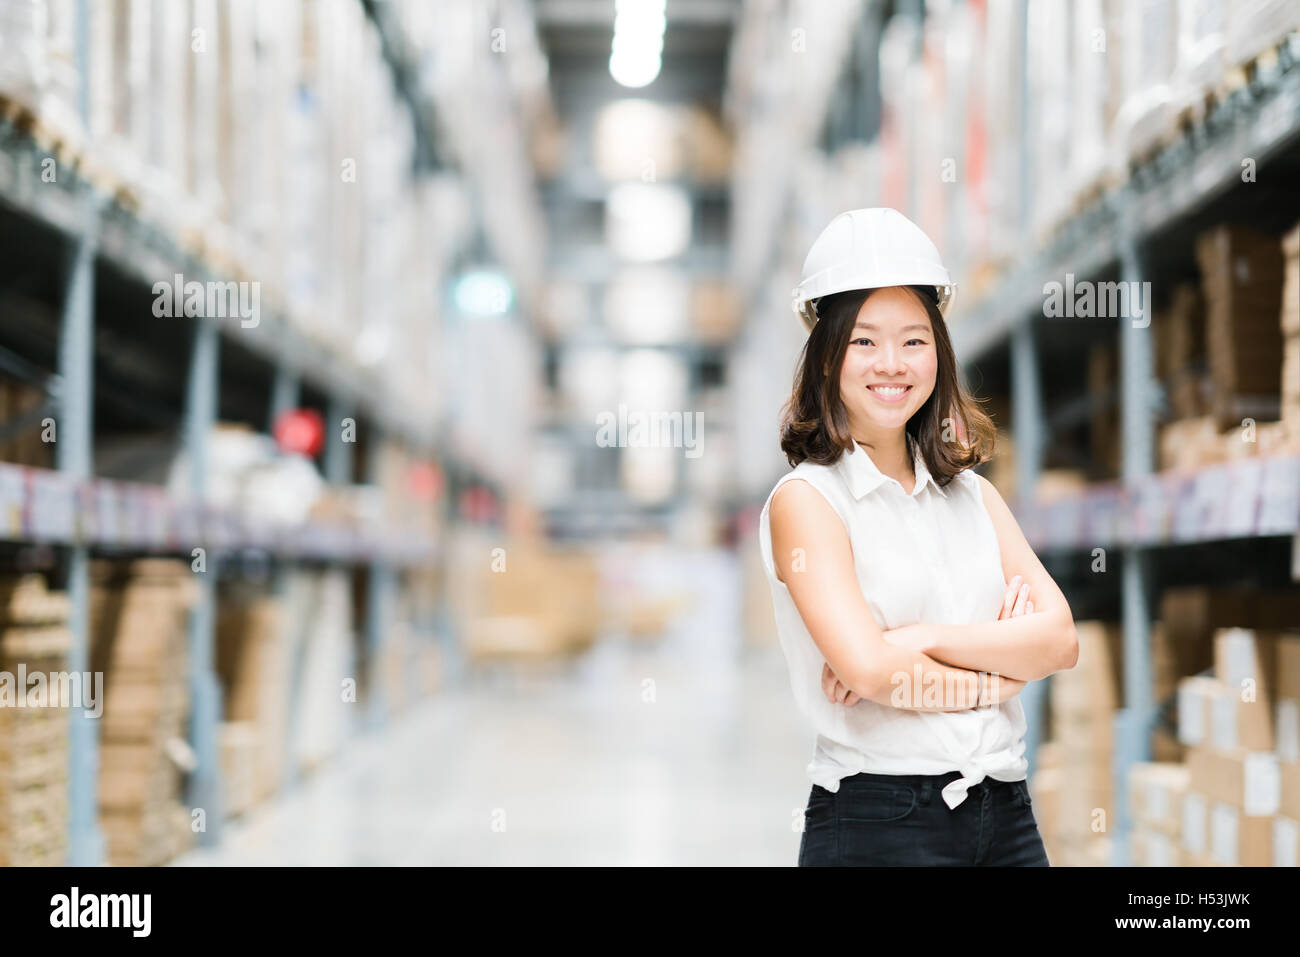 Schöne junge asiatische Ingenieur oder Techniker lächelnd, Lager oder Fabrik Unschärfe Hintergrund, Industrie oder Logistik-Konzept Stockfoto